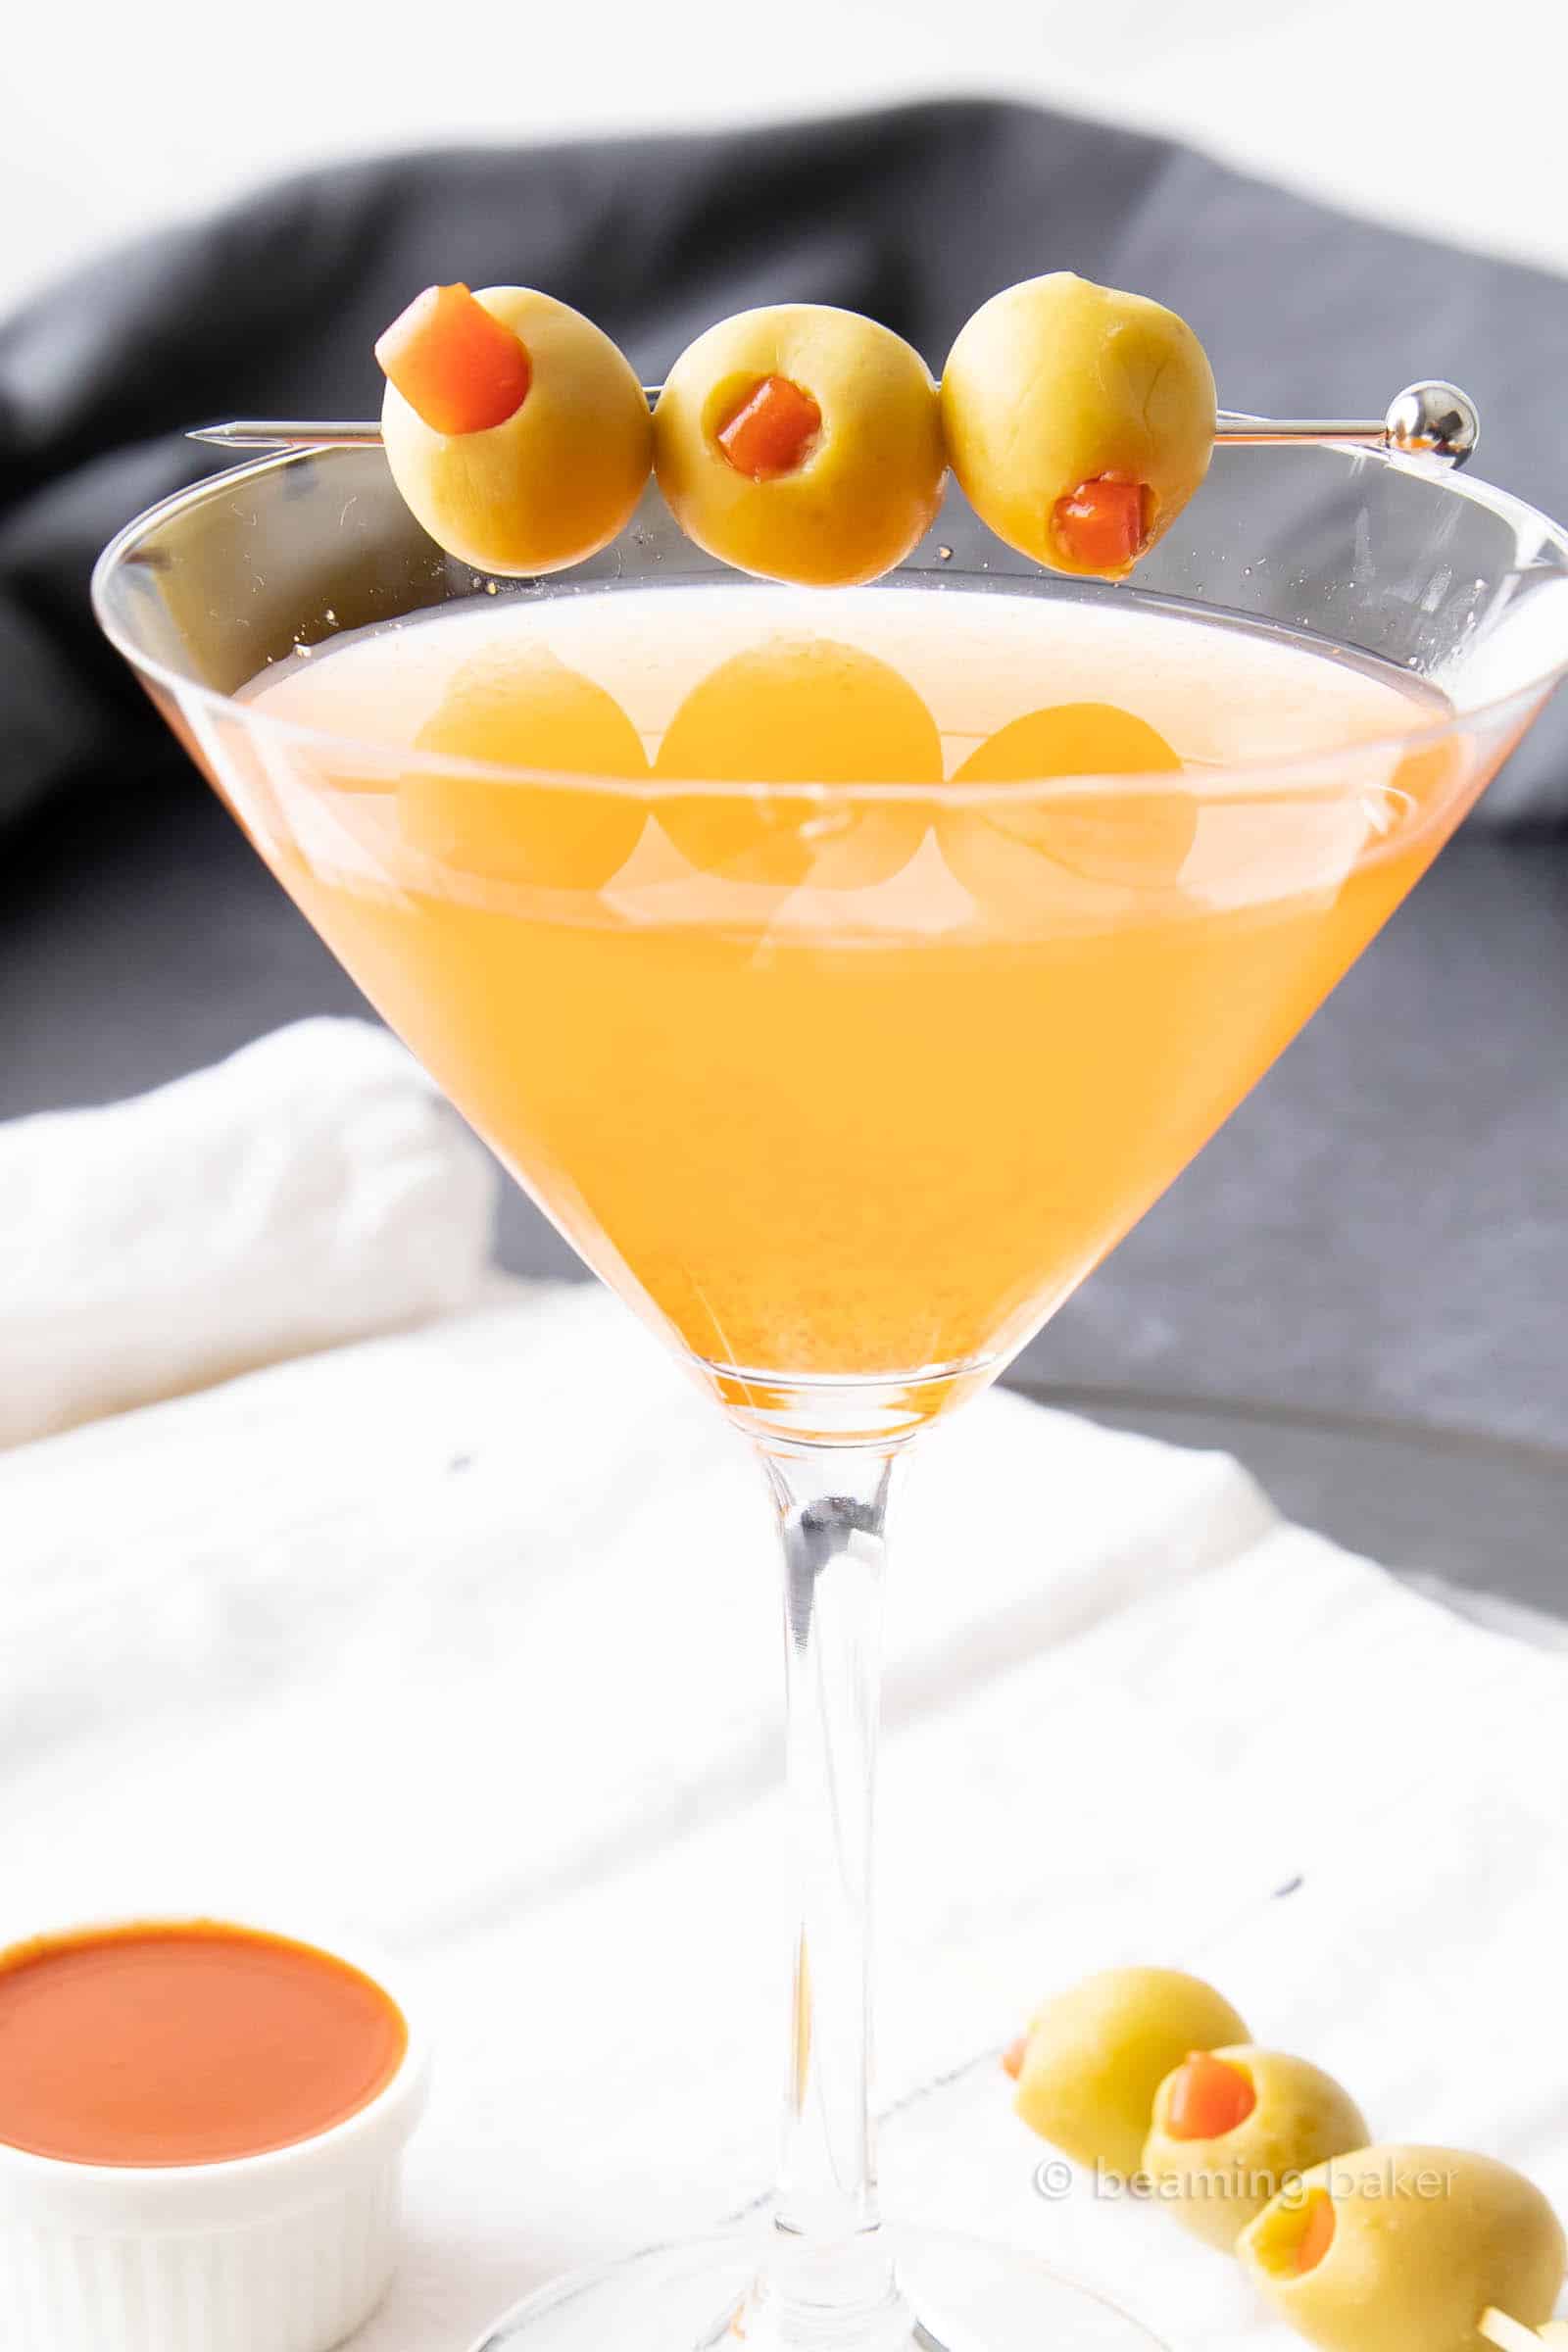 Super closeup shot of hot and dirty martini in a martini glass